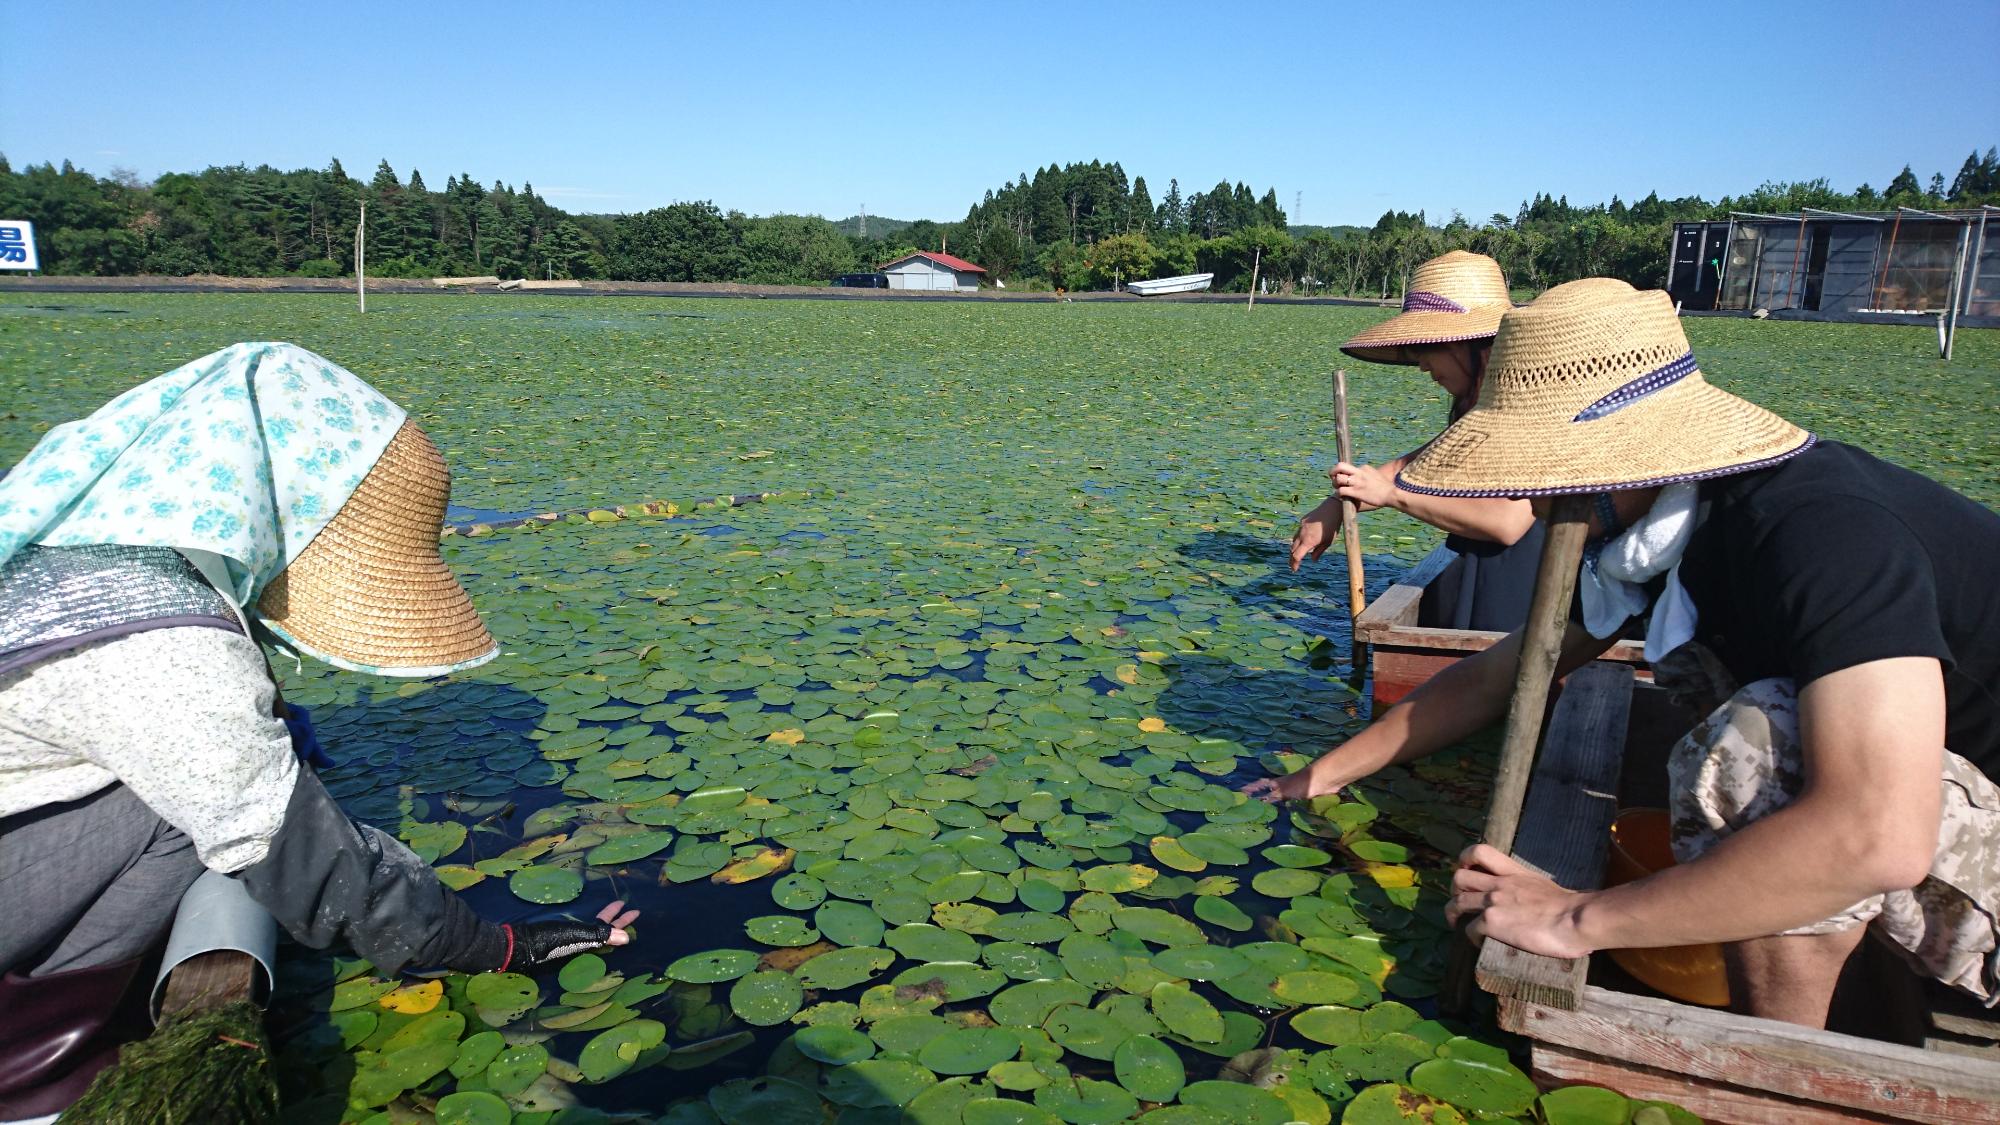 緑色のじゅんさいで覆われた沼で、麦わら帽子をかぶった3名がそれぞれの小舟に乗ってじゅんさい摘みをしている写真